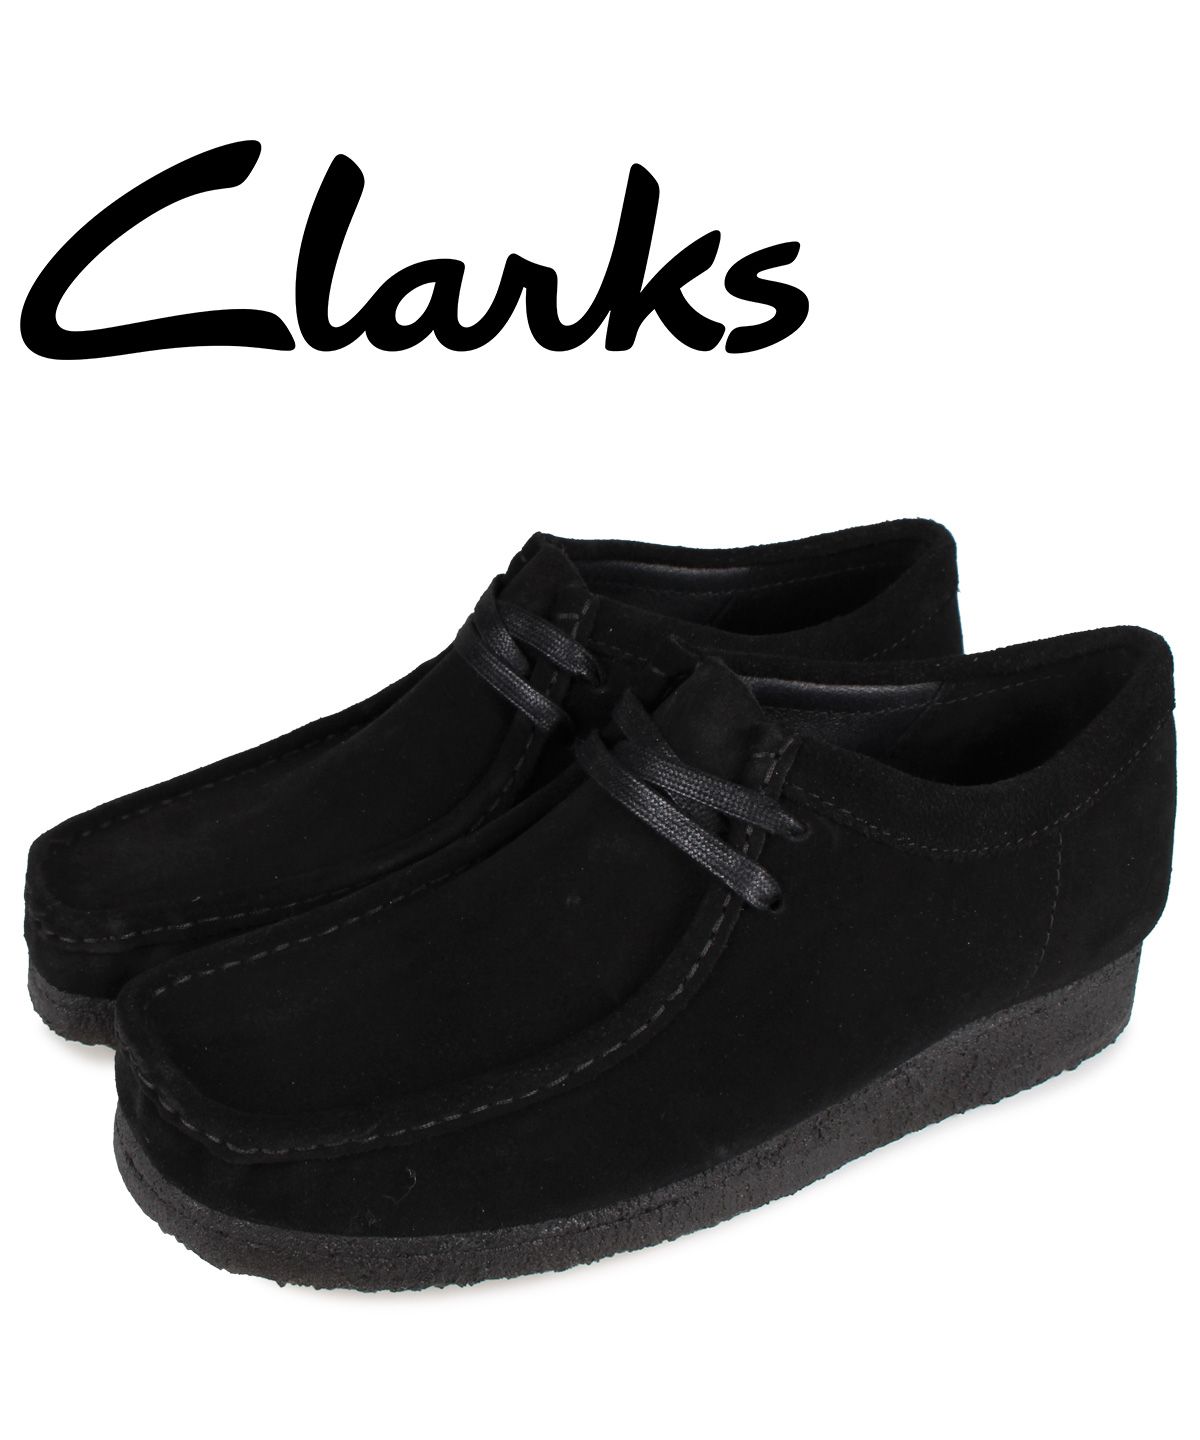 Clarks  Wallabee  黒 28cm  クラークス ワラビー ブーツ 靴 メンズ 買う 時期